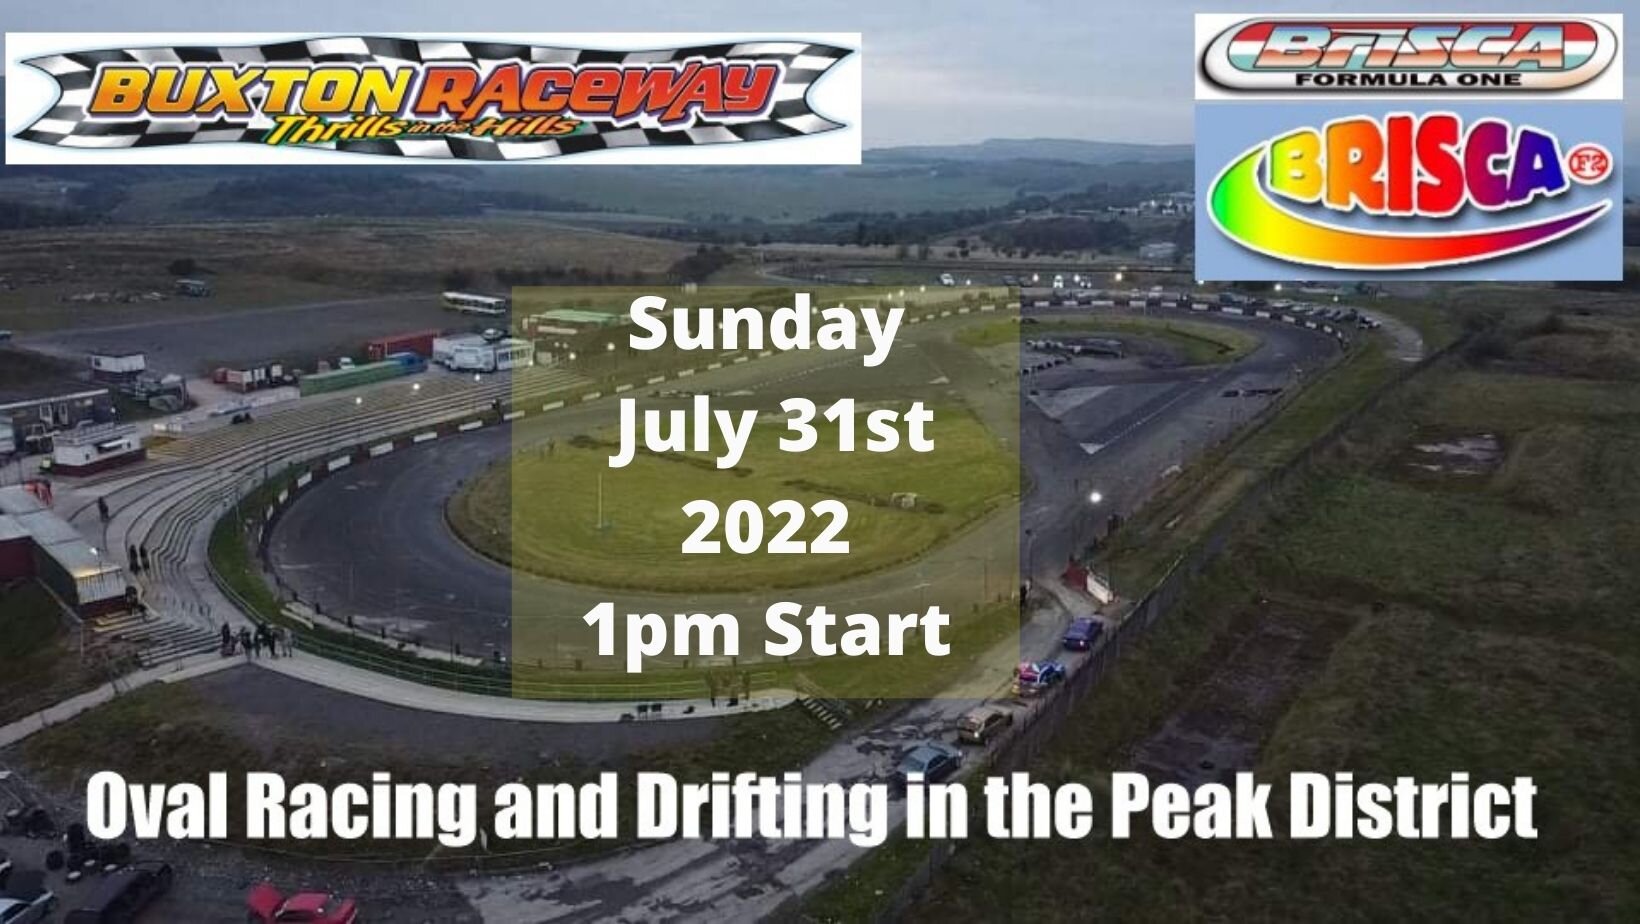 Buxton Raceway | Sunday 31st July 1pm